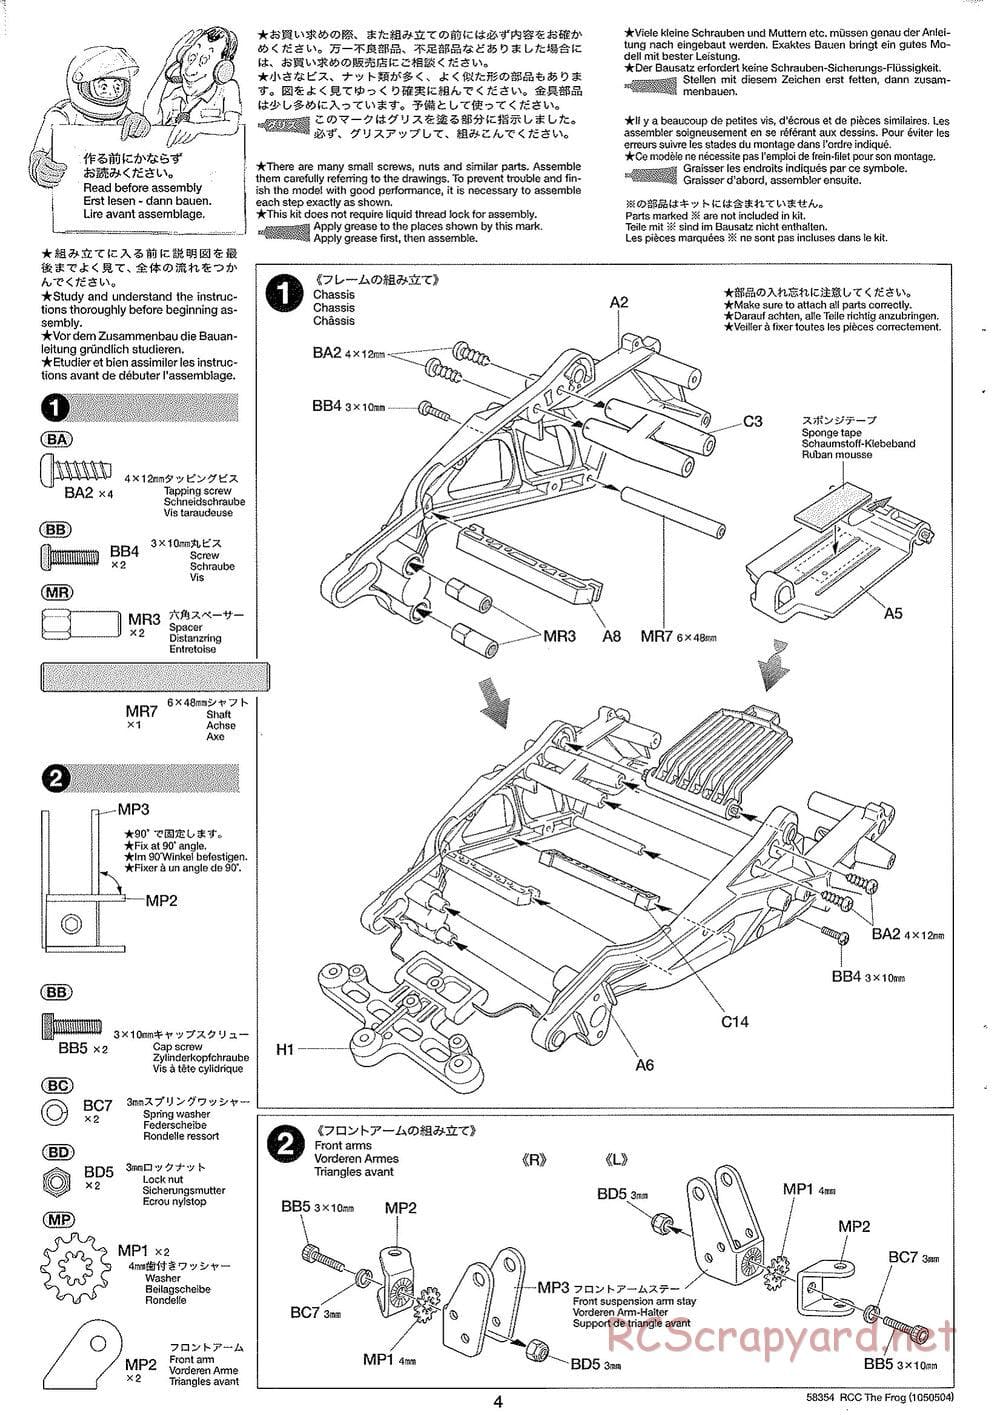 Tamiya - The Frog - 2005 - ORV Chassis - Manual - Page 4